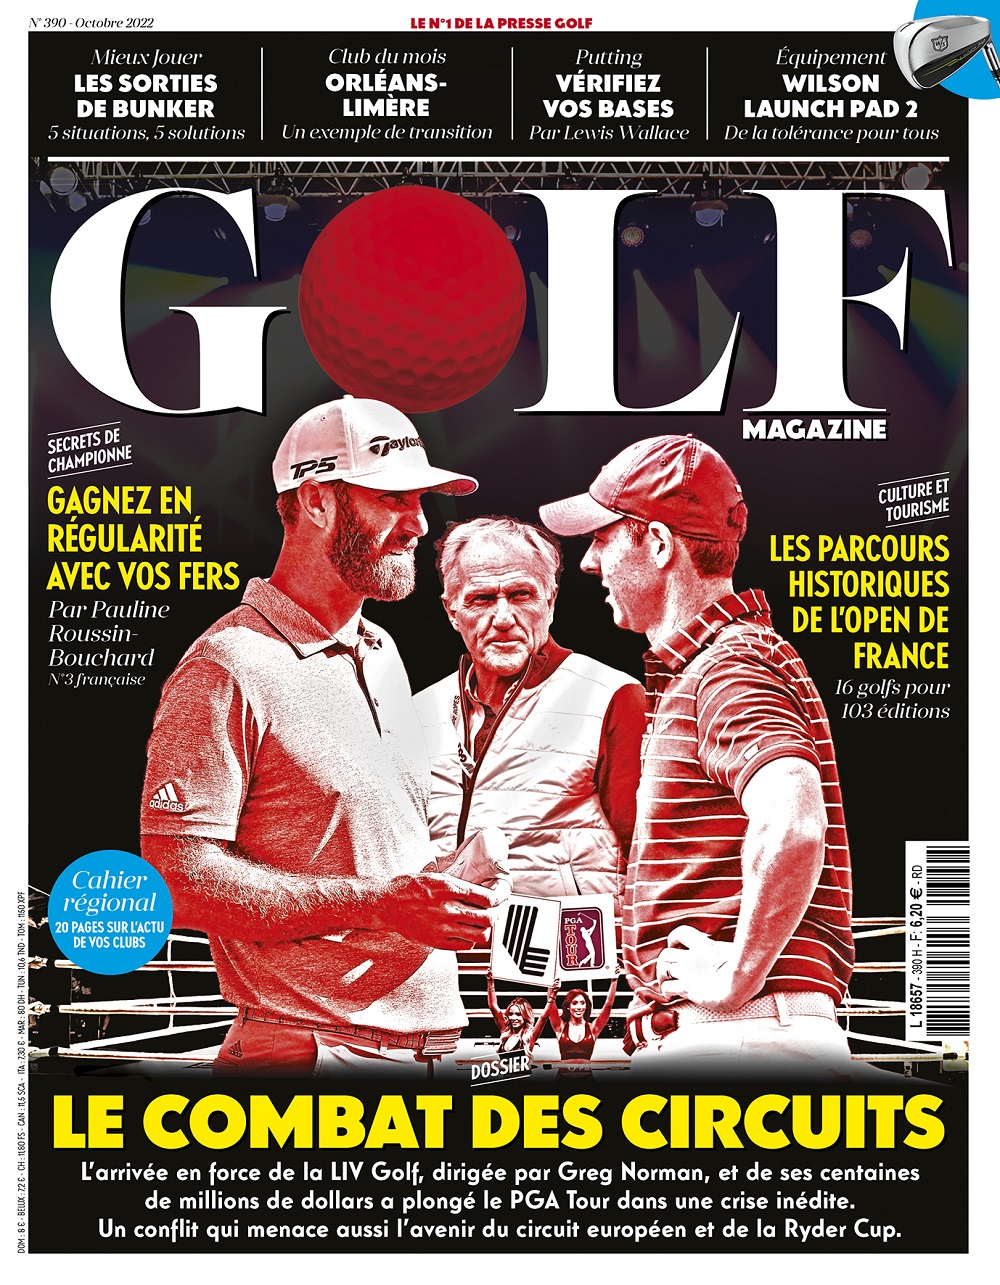 Le Golf Magazine n°390 est en kiosque !